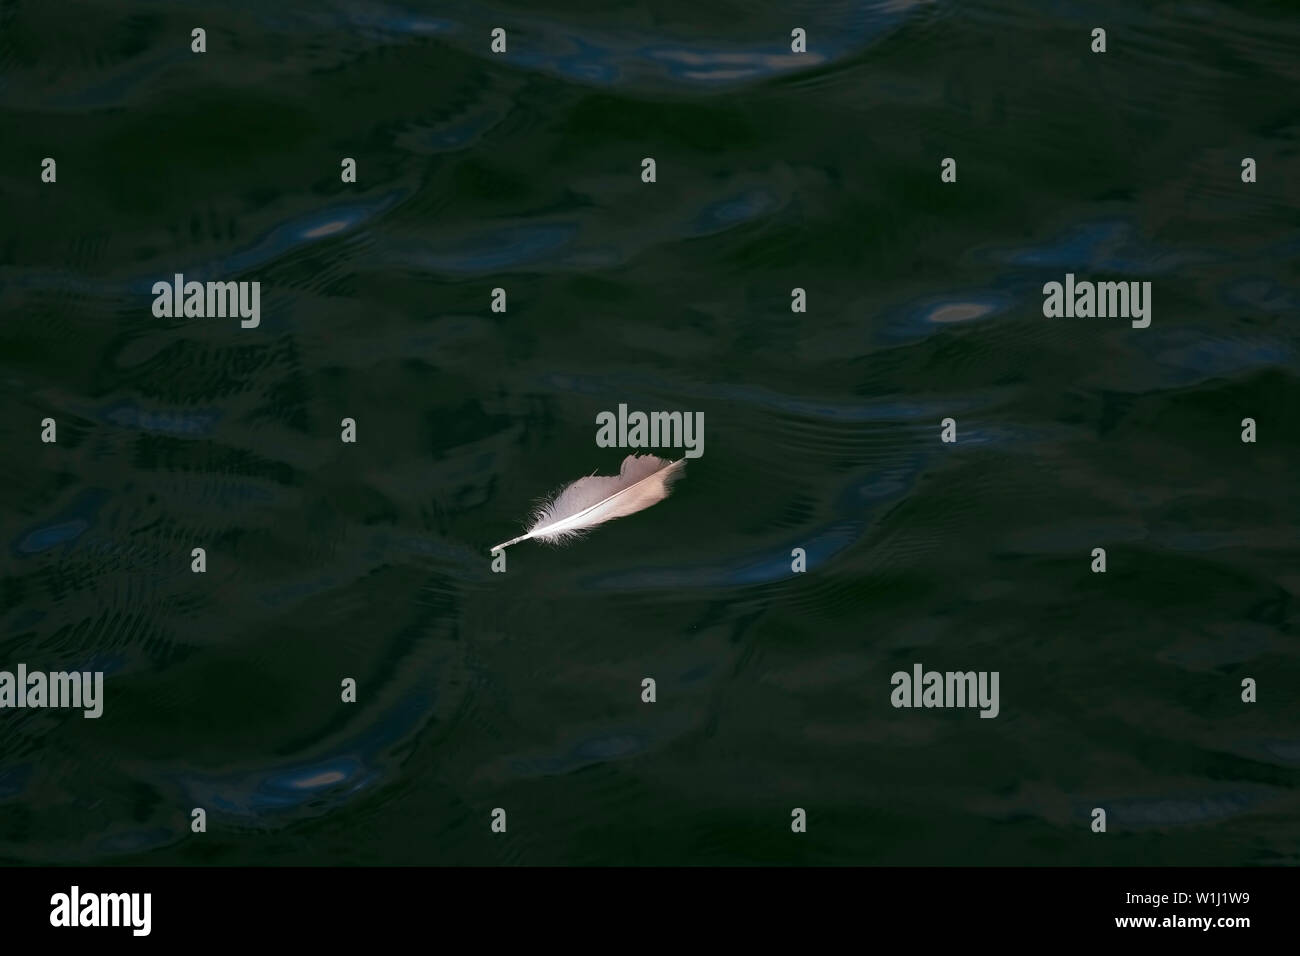 Weiße Vogelfeder schwimmend auf Dunkel grünes Wasser Stockfoto